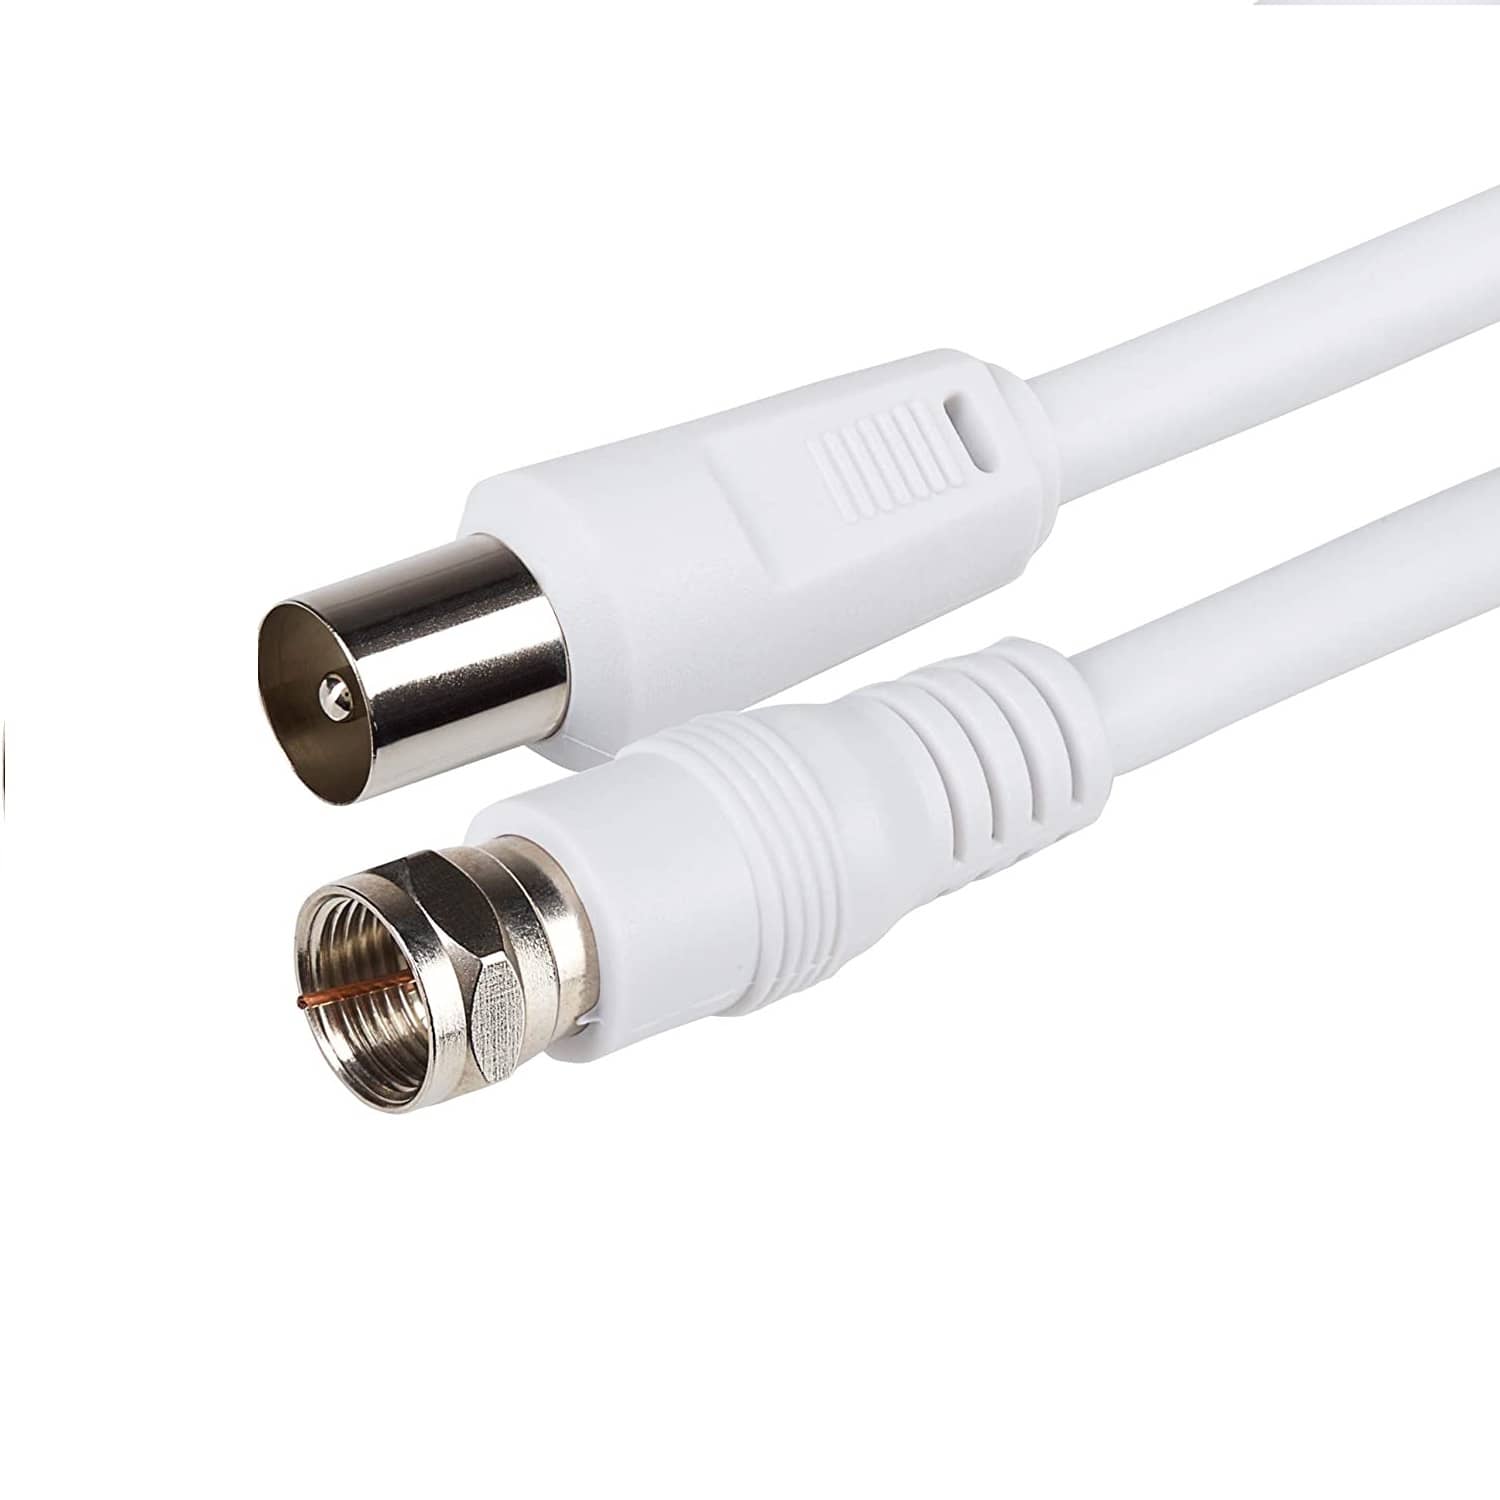 Cable coaxial para satélite / 130 dB / EN50117 / A+ por solo 2,20 €